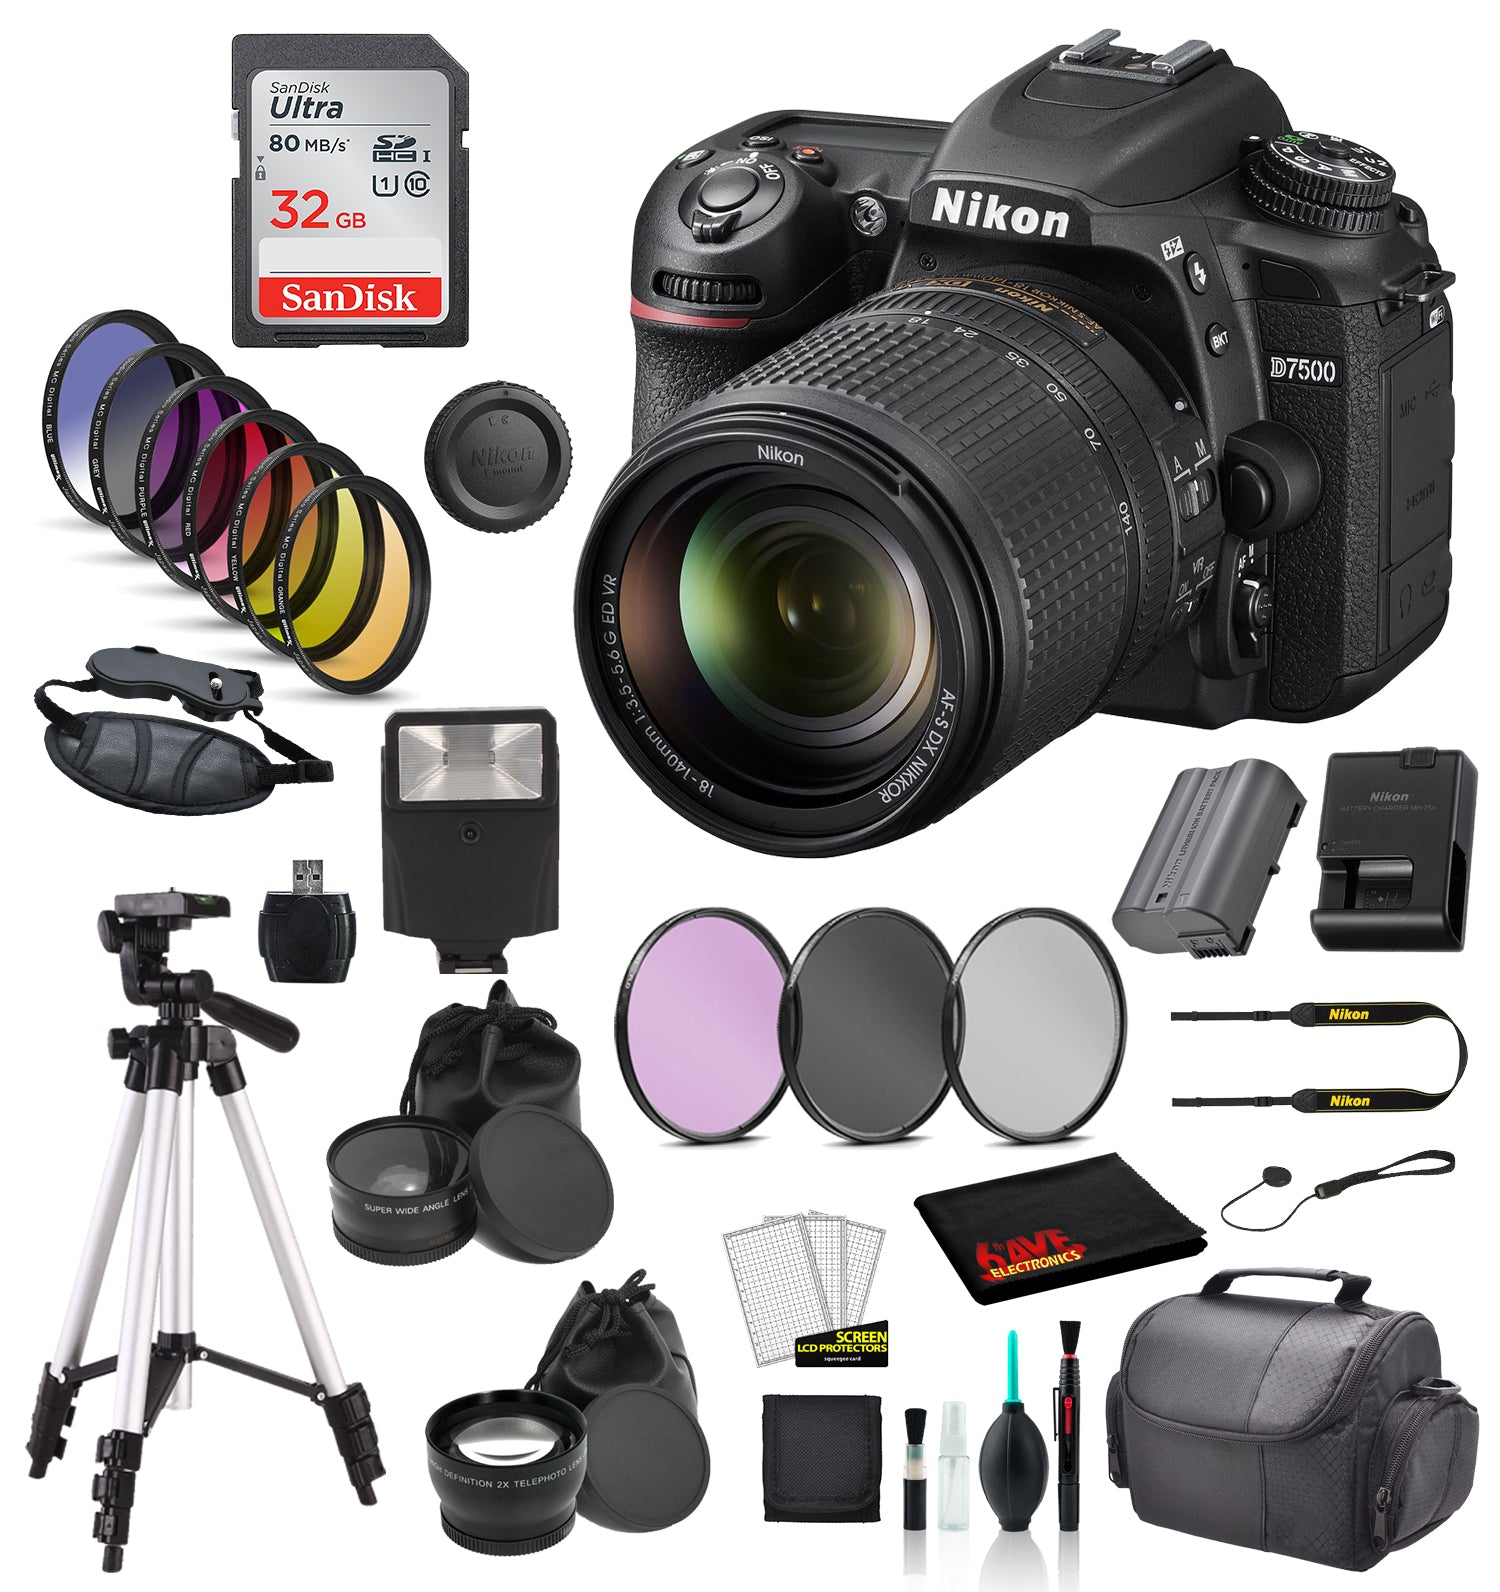 Nikon D7500 DSLR Camera with 18-140mm Lens Bundle   Includes SanDisk 32GB SD Card + 9PC Filter + MORE - International